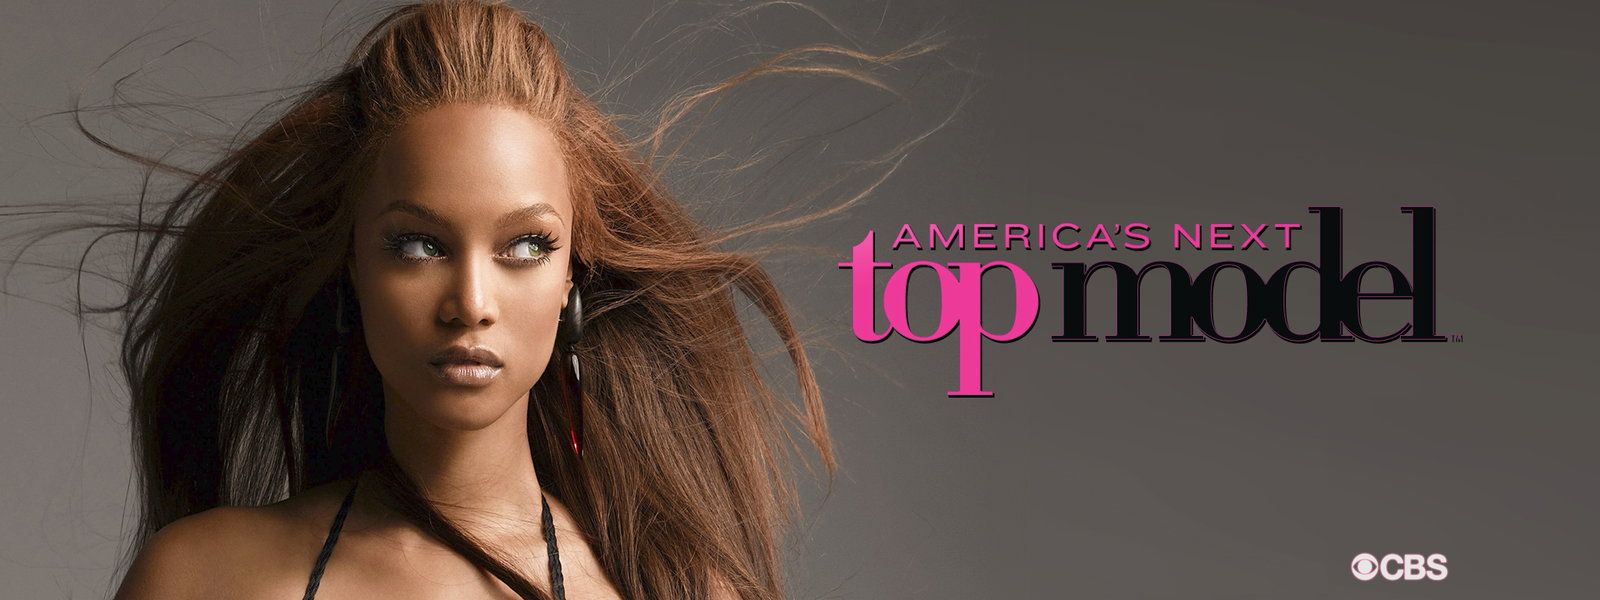 nina antm, big eyes rule!  Next top model, America's next top model,  America's next top model